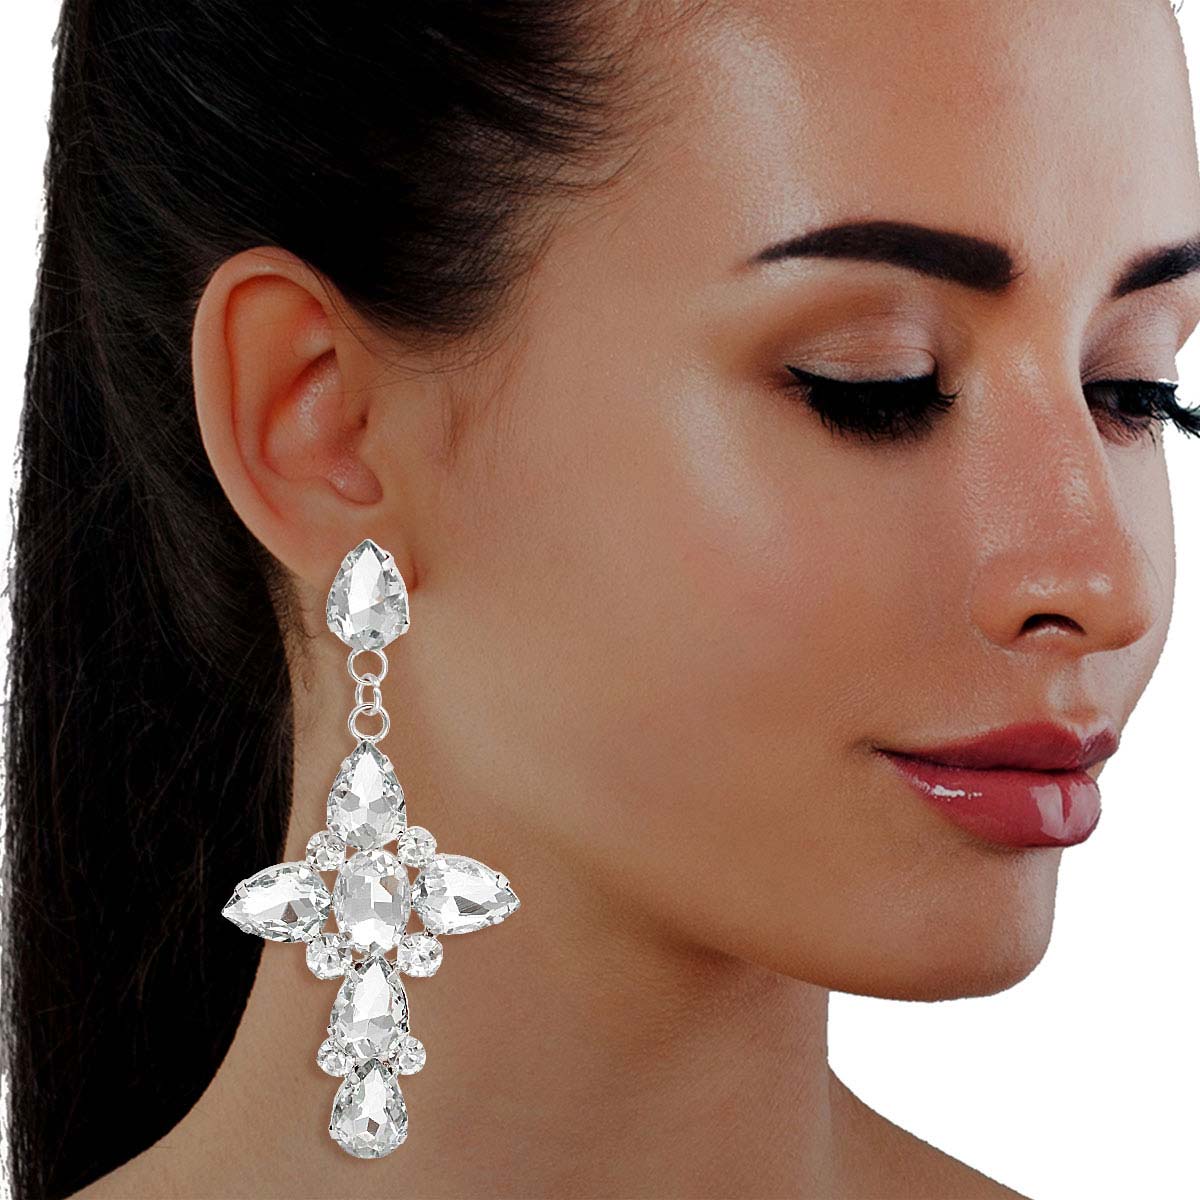 Silver Teardrop Crystal Cross Earrings